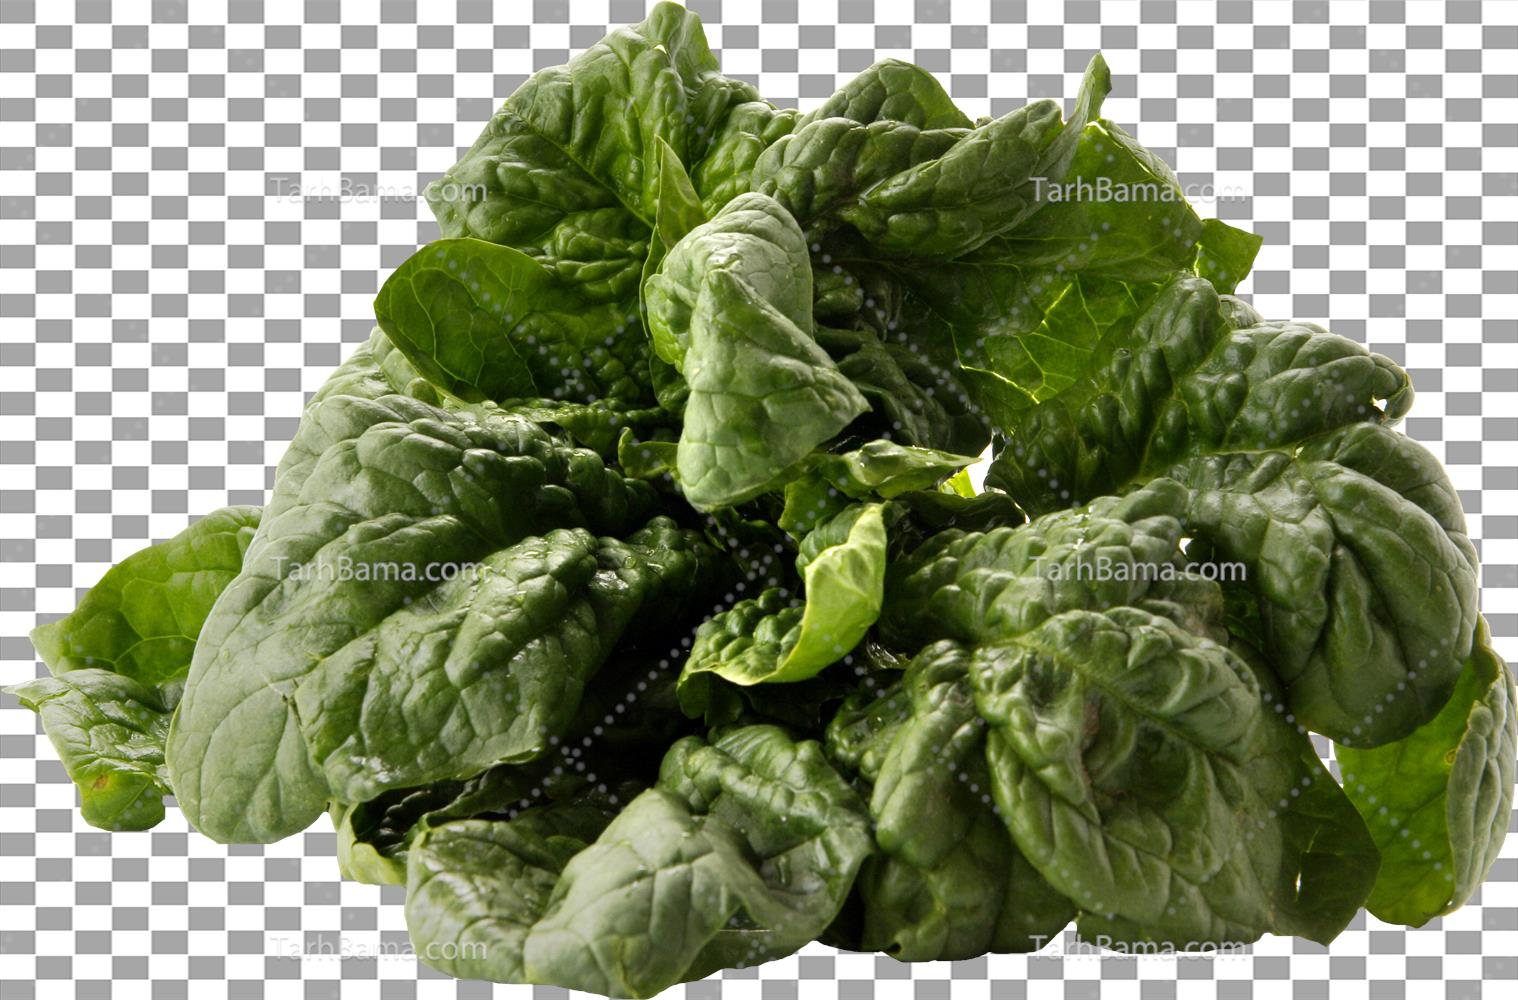 تصاویر سبزیجات